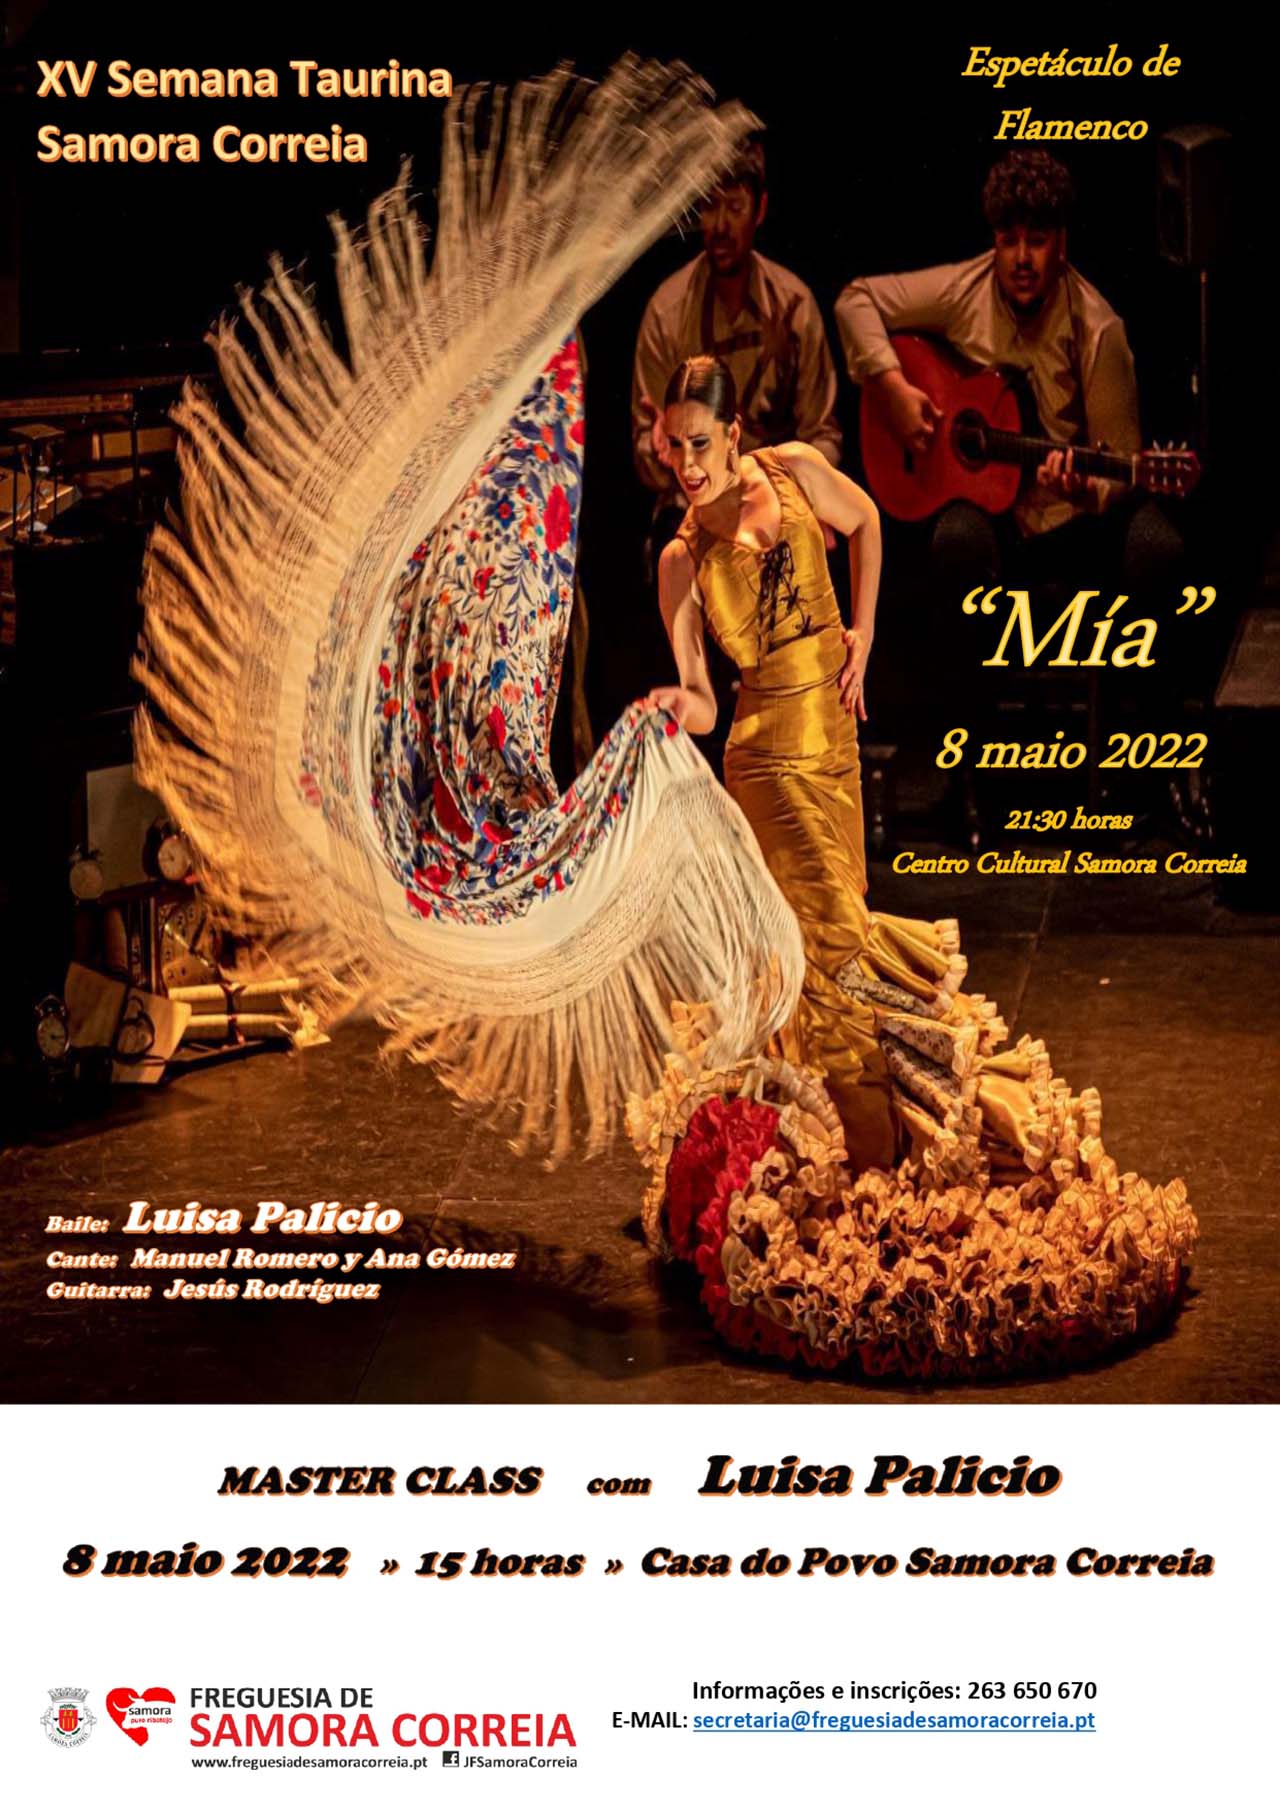 Imagem XV Semana Taurina - Espetáculo de Flamenco - "MÍA"